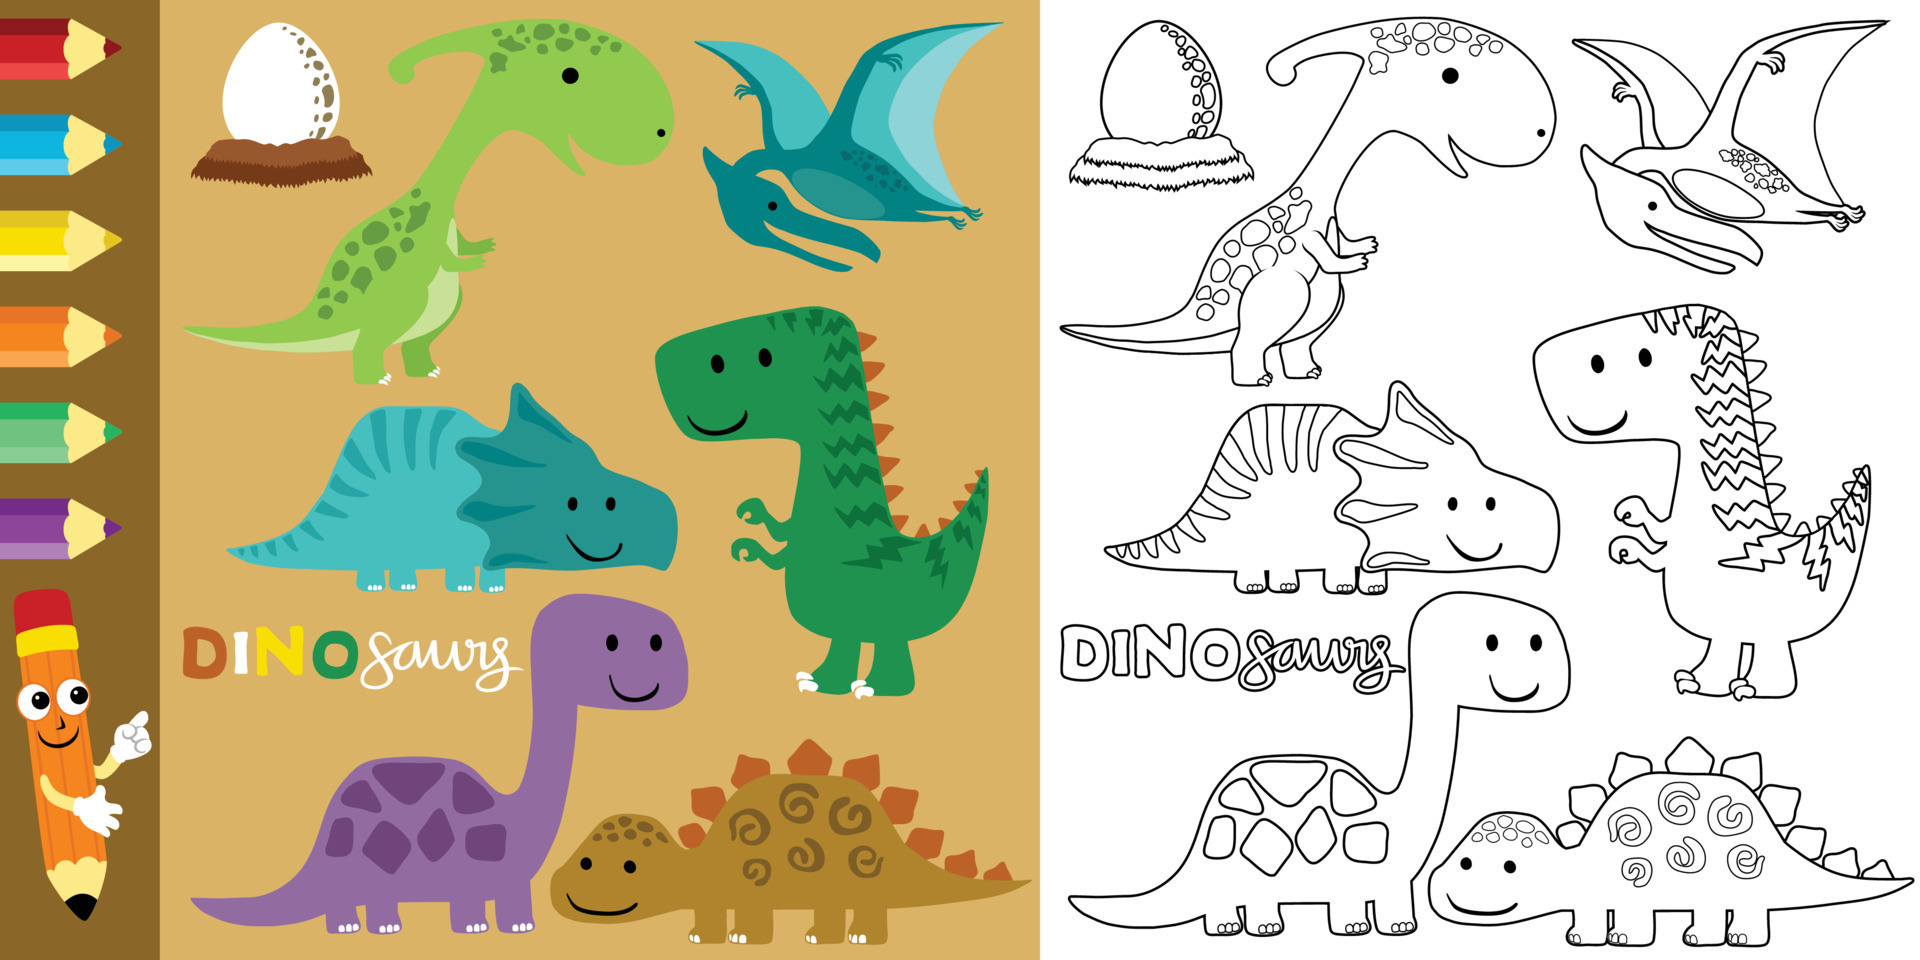 A Ilustração Do Vetor Dos Desenhos Animados Do Livro Para Colorir Do  Dinossauro Ajustou 1 Ilustração do Vetor - Ilustração de diferente, dino:  85940255